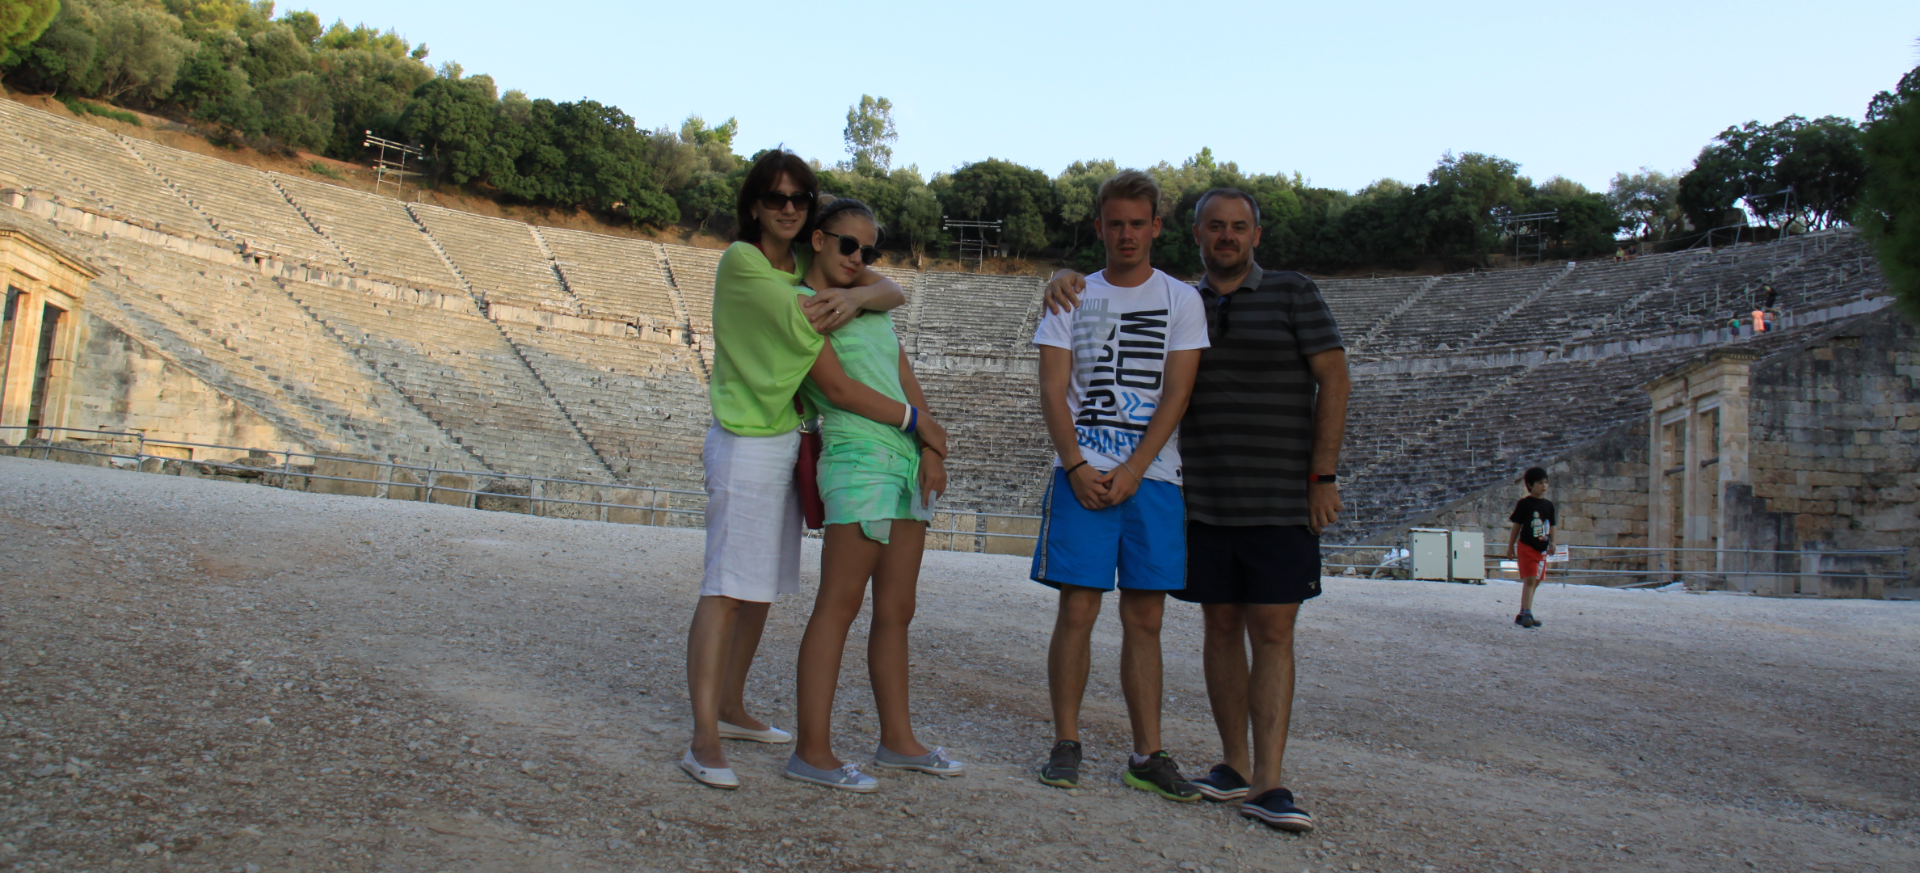 La Epidavros